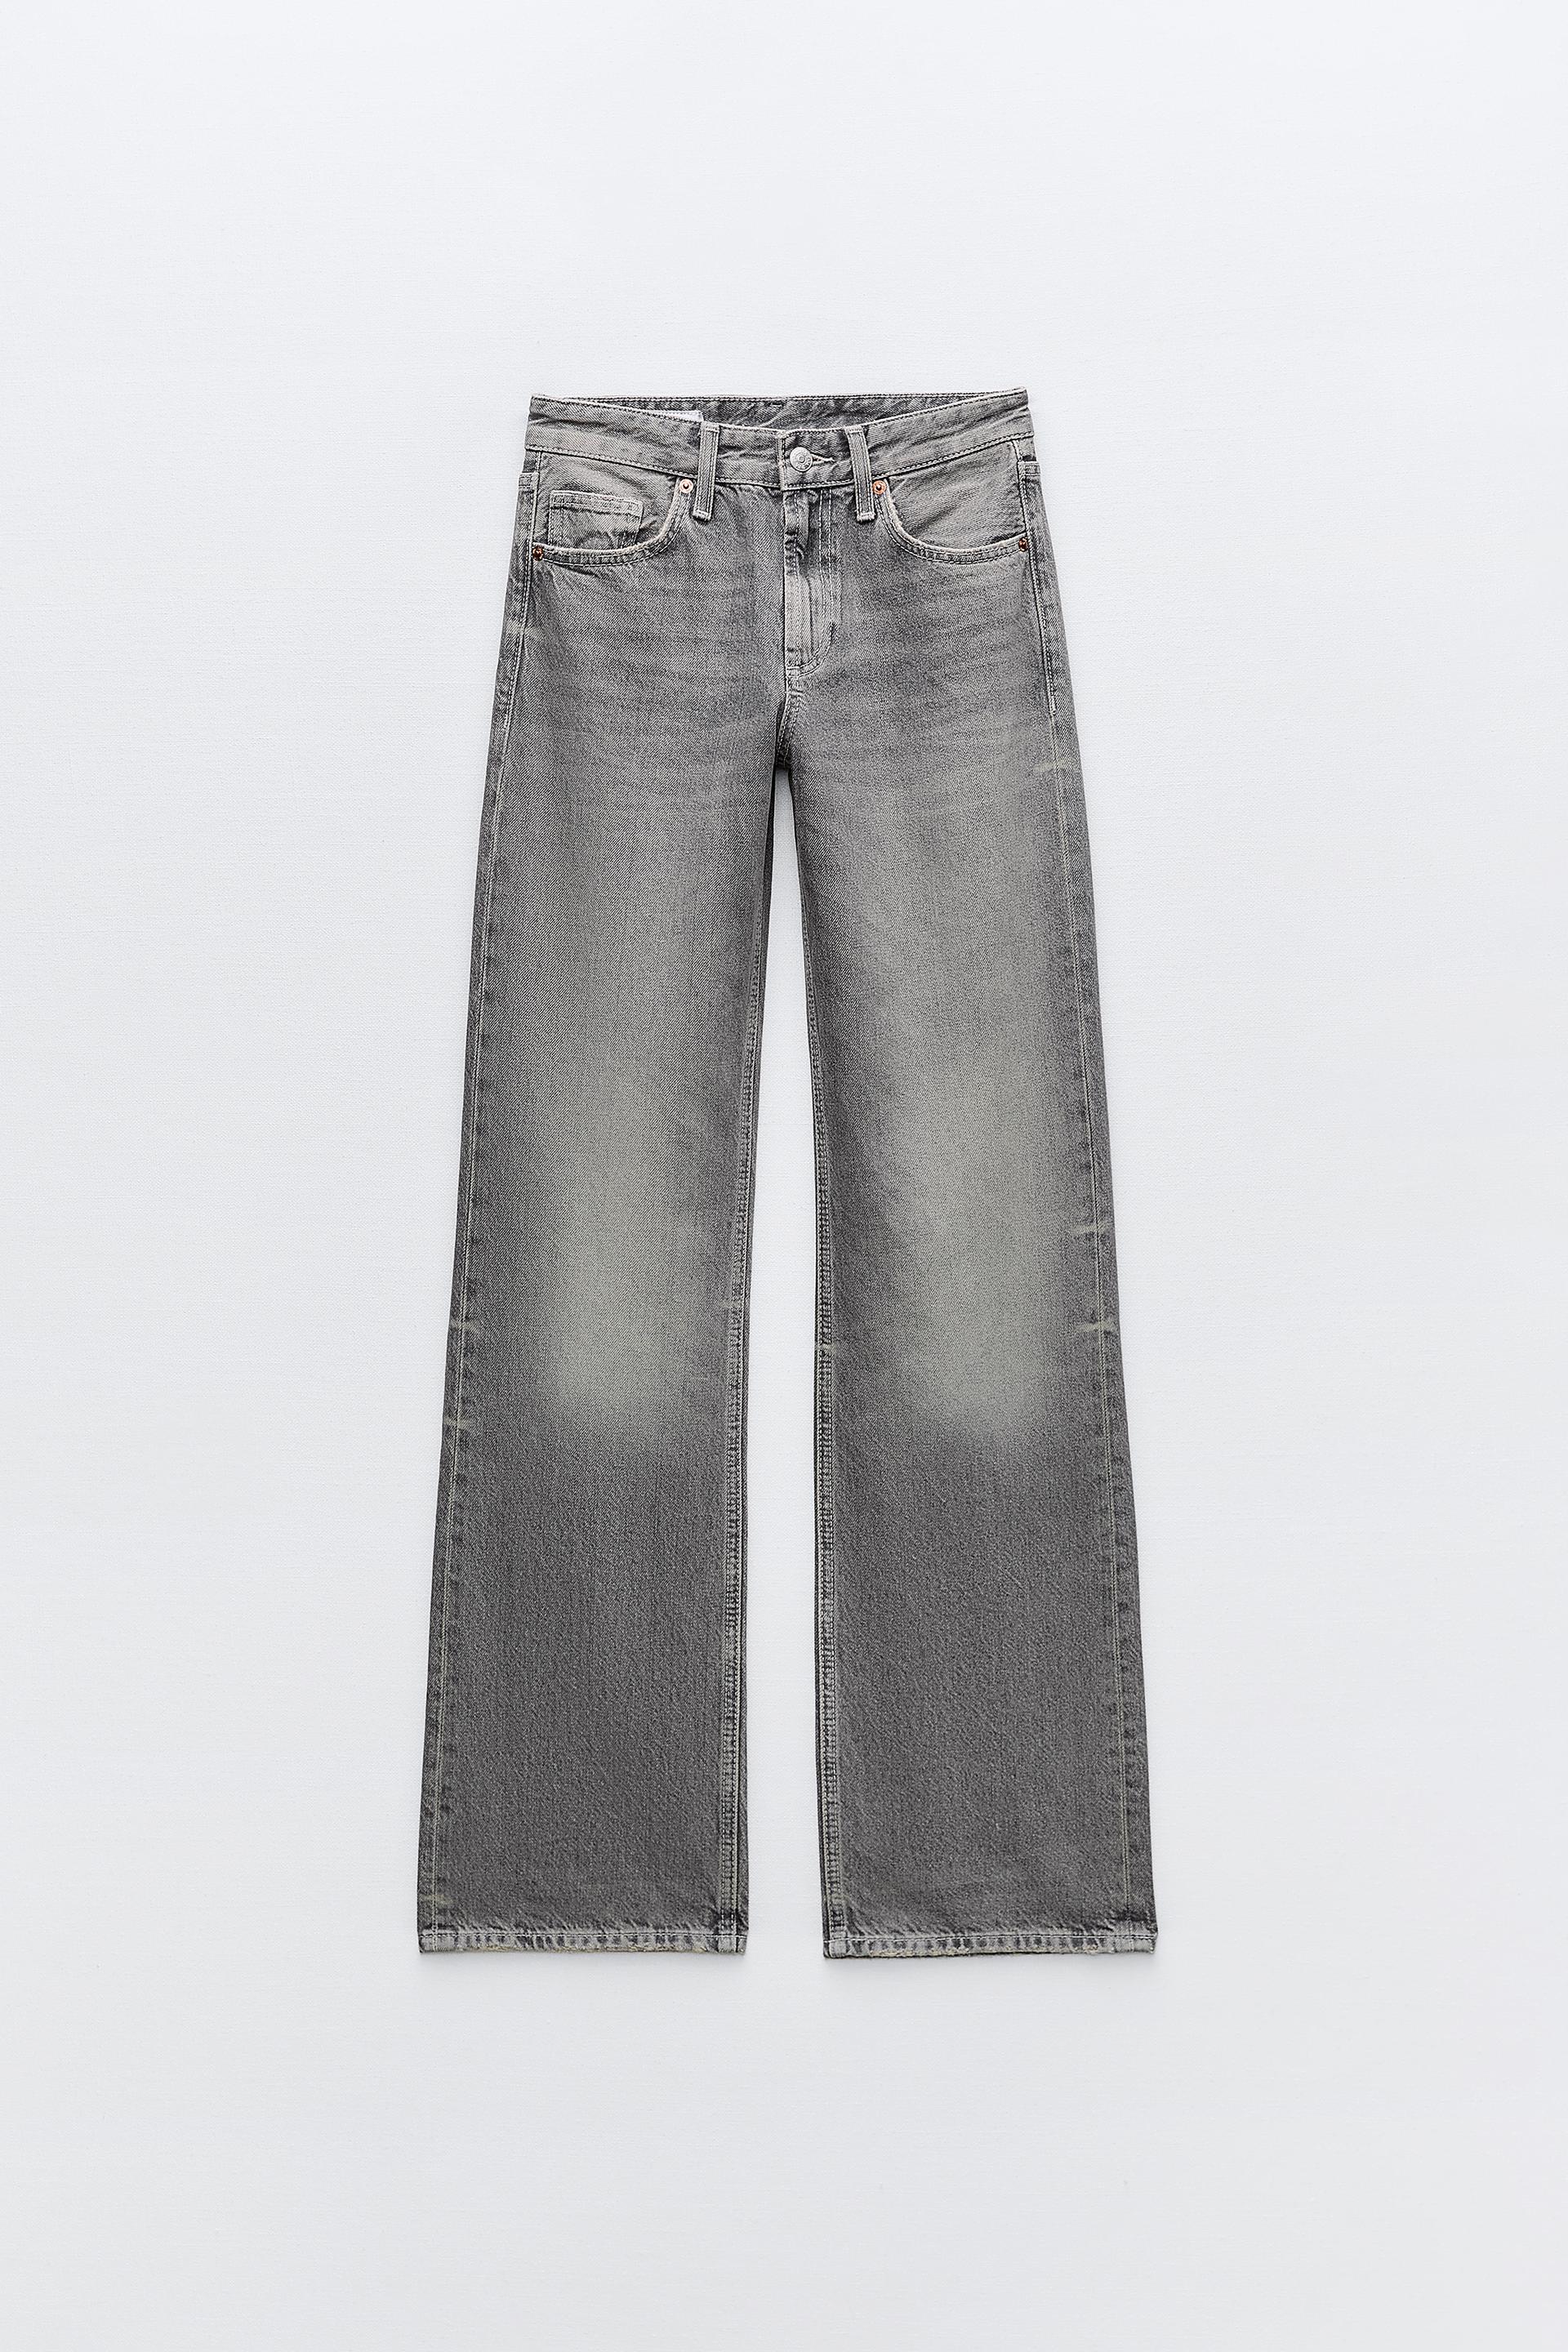 Джинсы Zara Trf Wide-leg Full Length, серо-синий джинсы zara trf wide leg full length светло серый